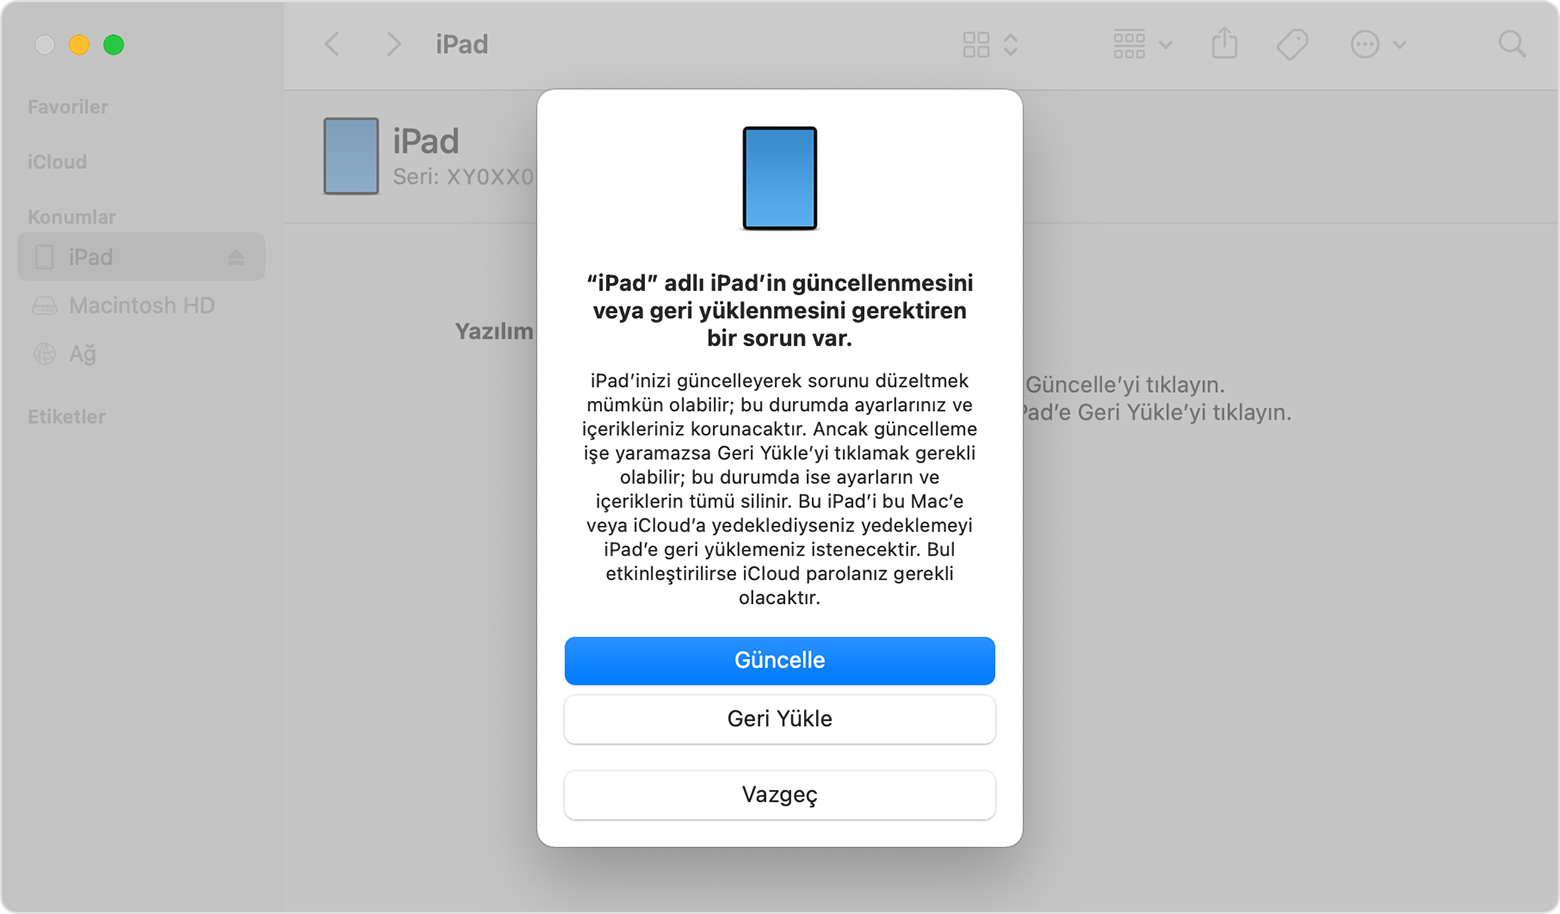 iPad'inizi güncelleme veya geri yükleme seçeneklerinin yer aldığı bir istem gösteren Finder penceresi. Güncelle seçilidir.